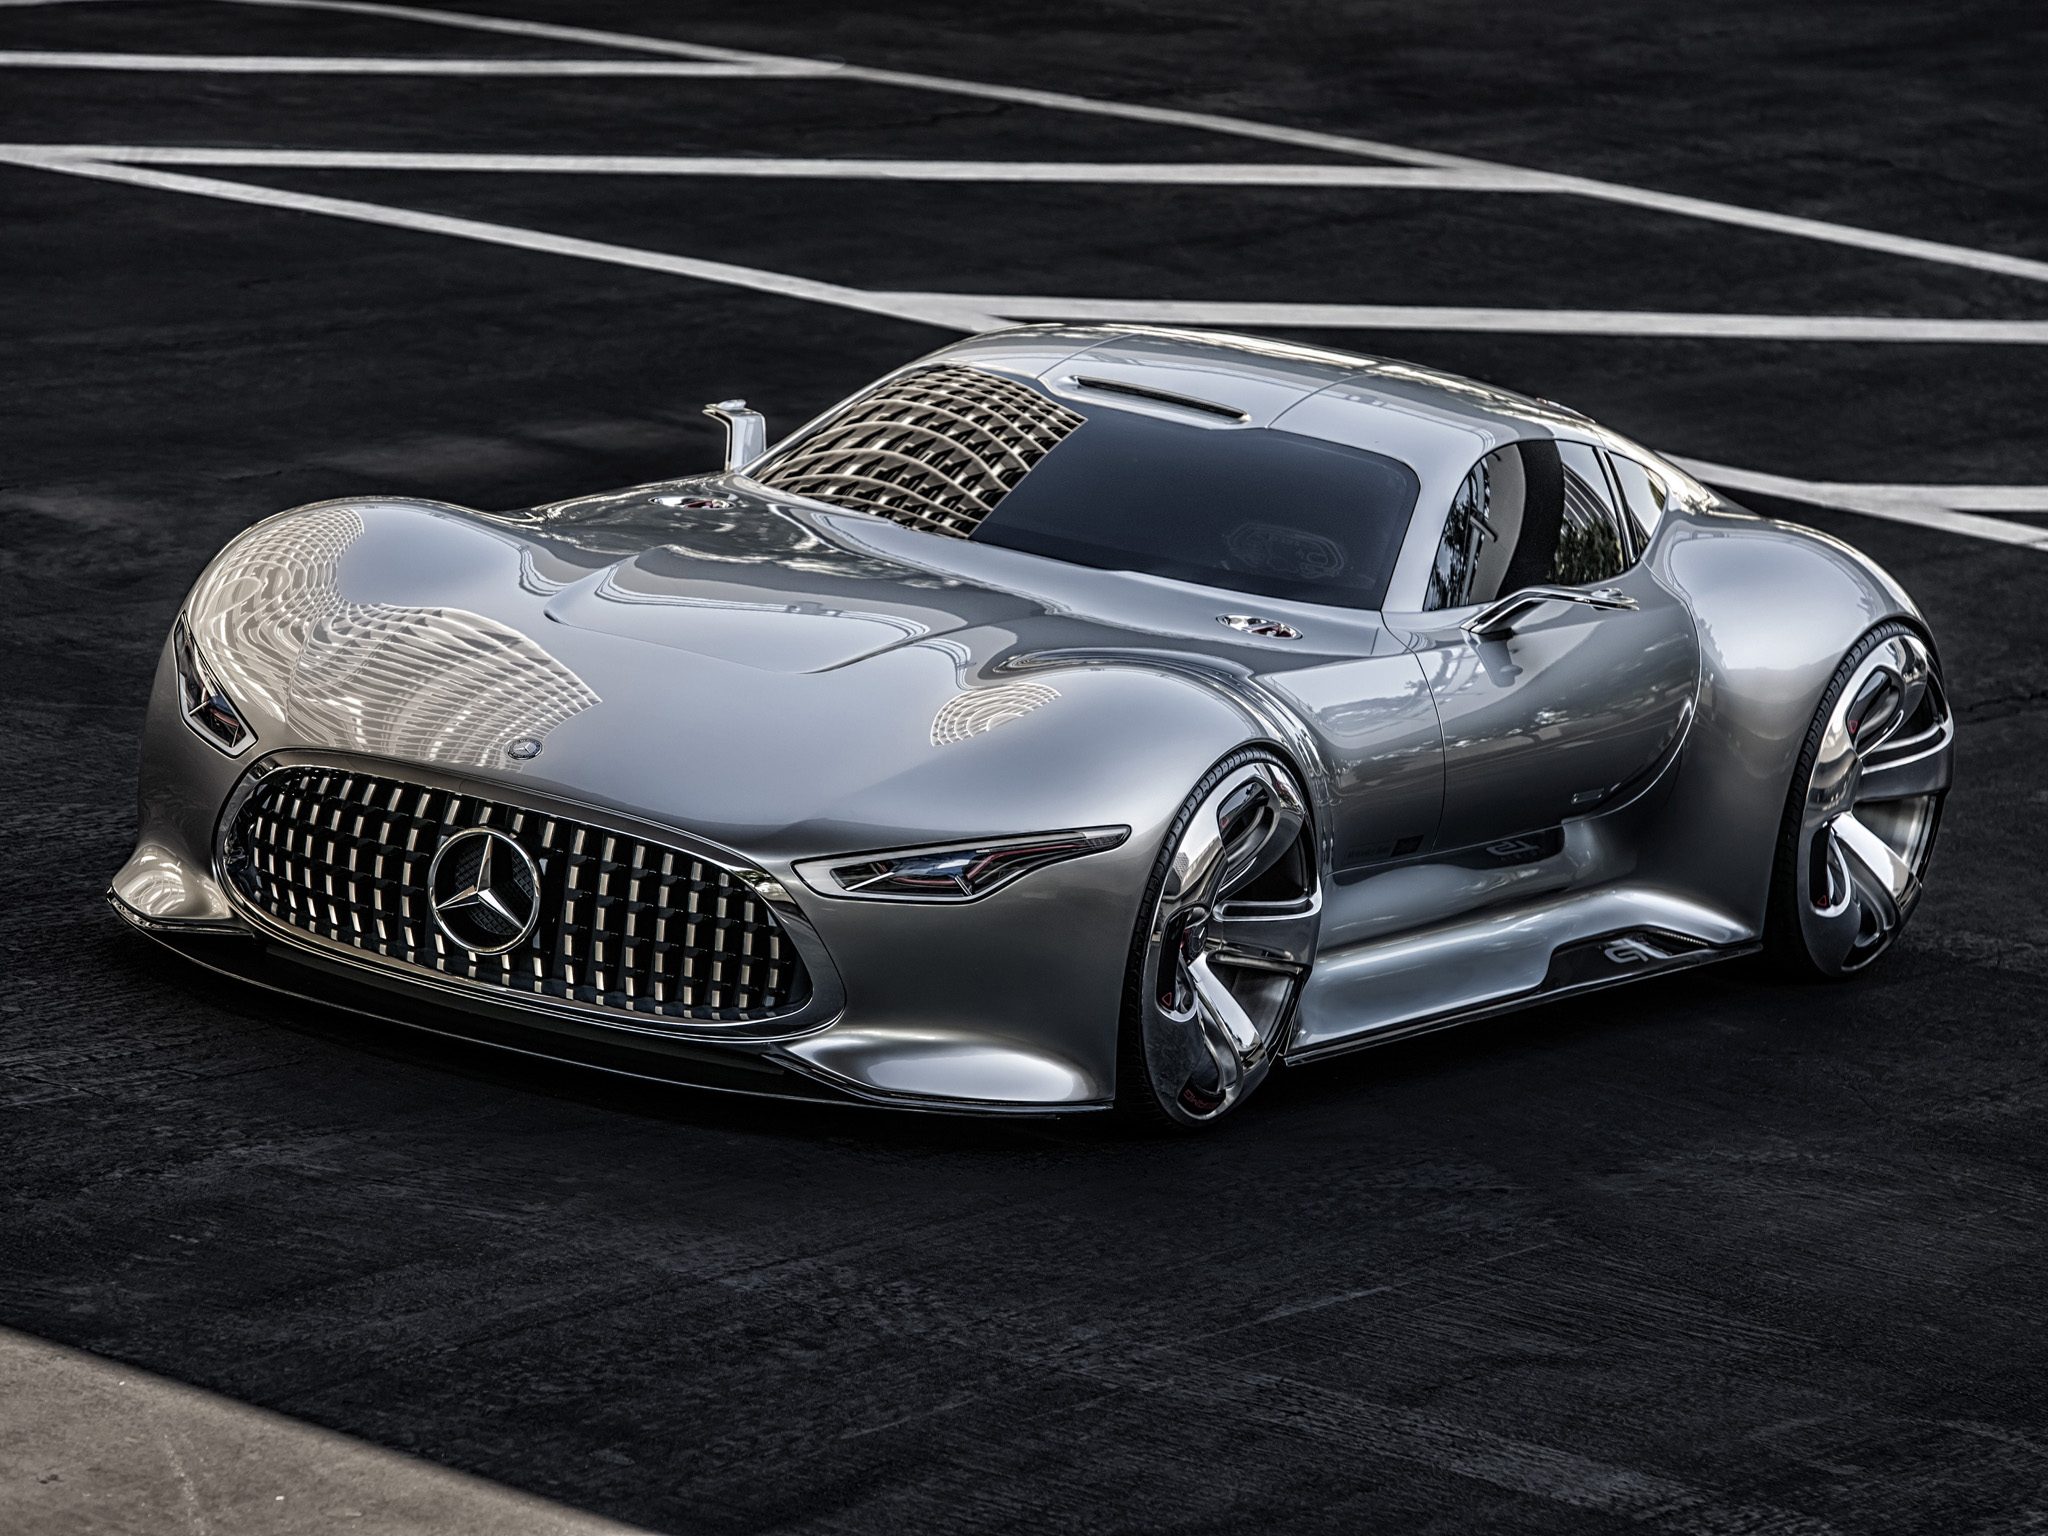 2014, Mercedes, Benz, Amg, Vision, Gran, Turismo, Concept, Supercar Wallpaper